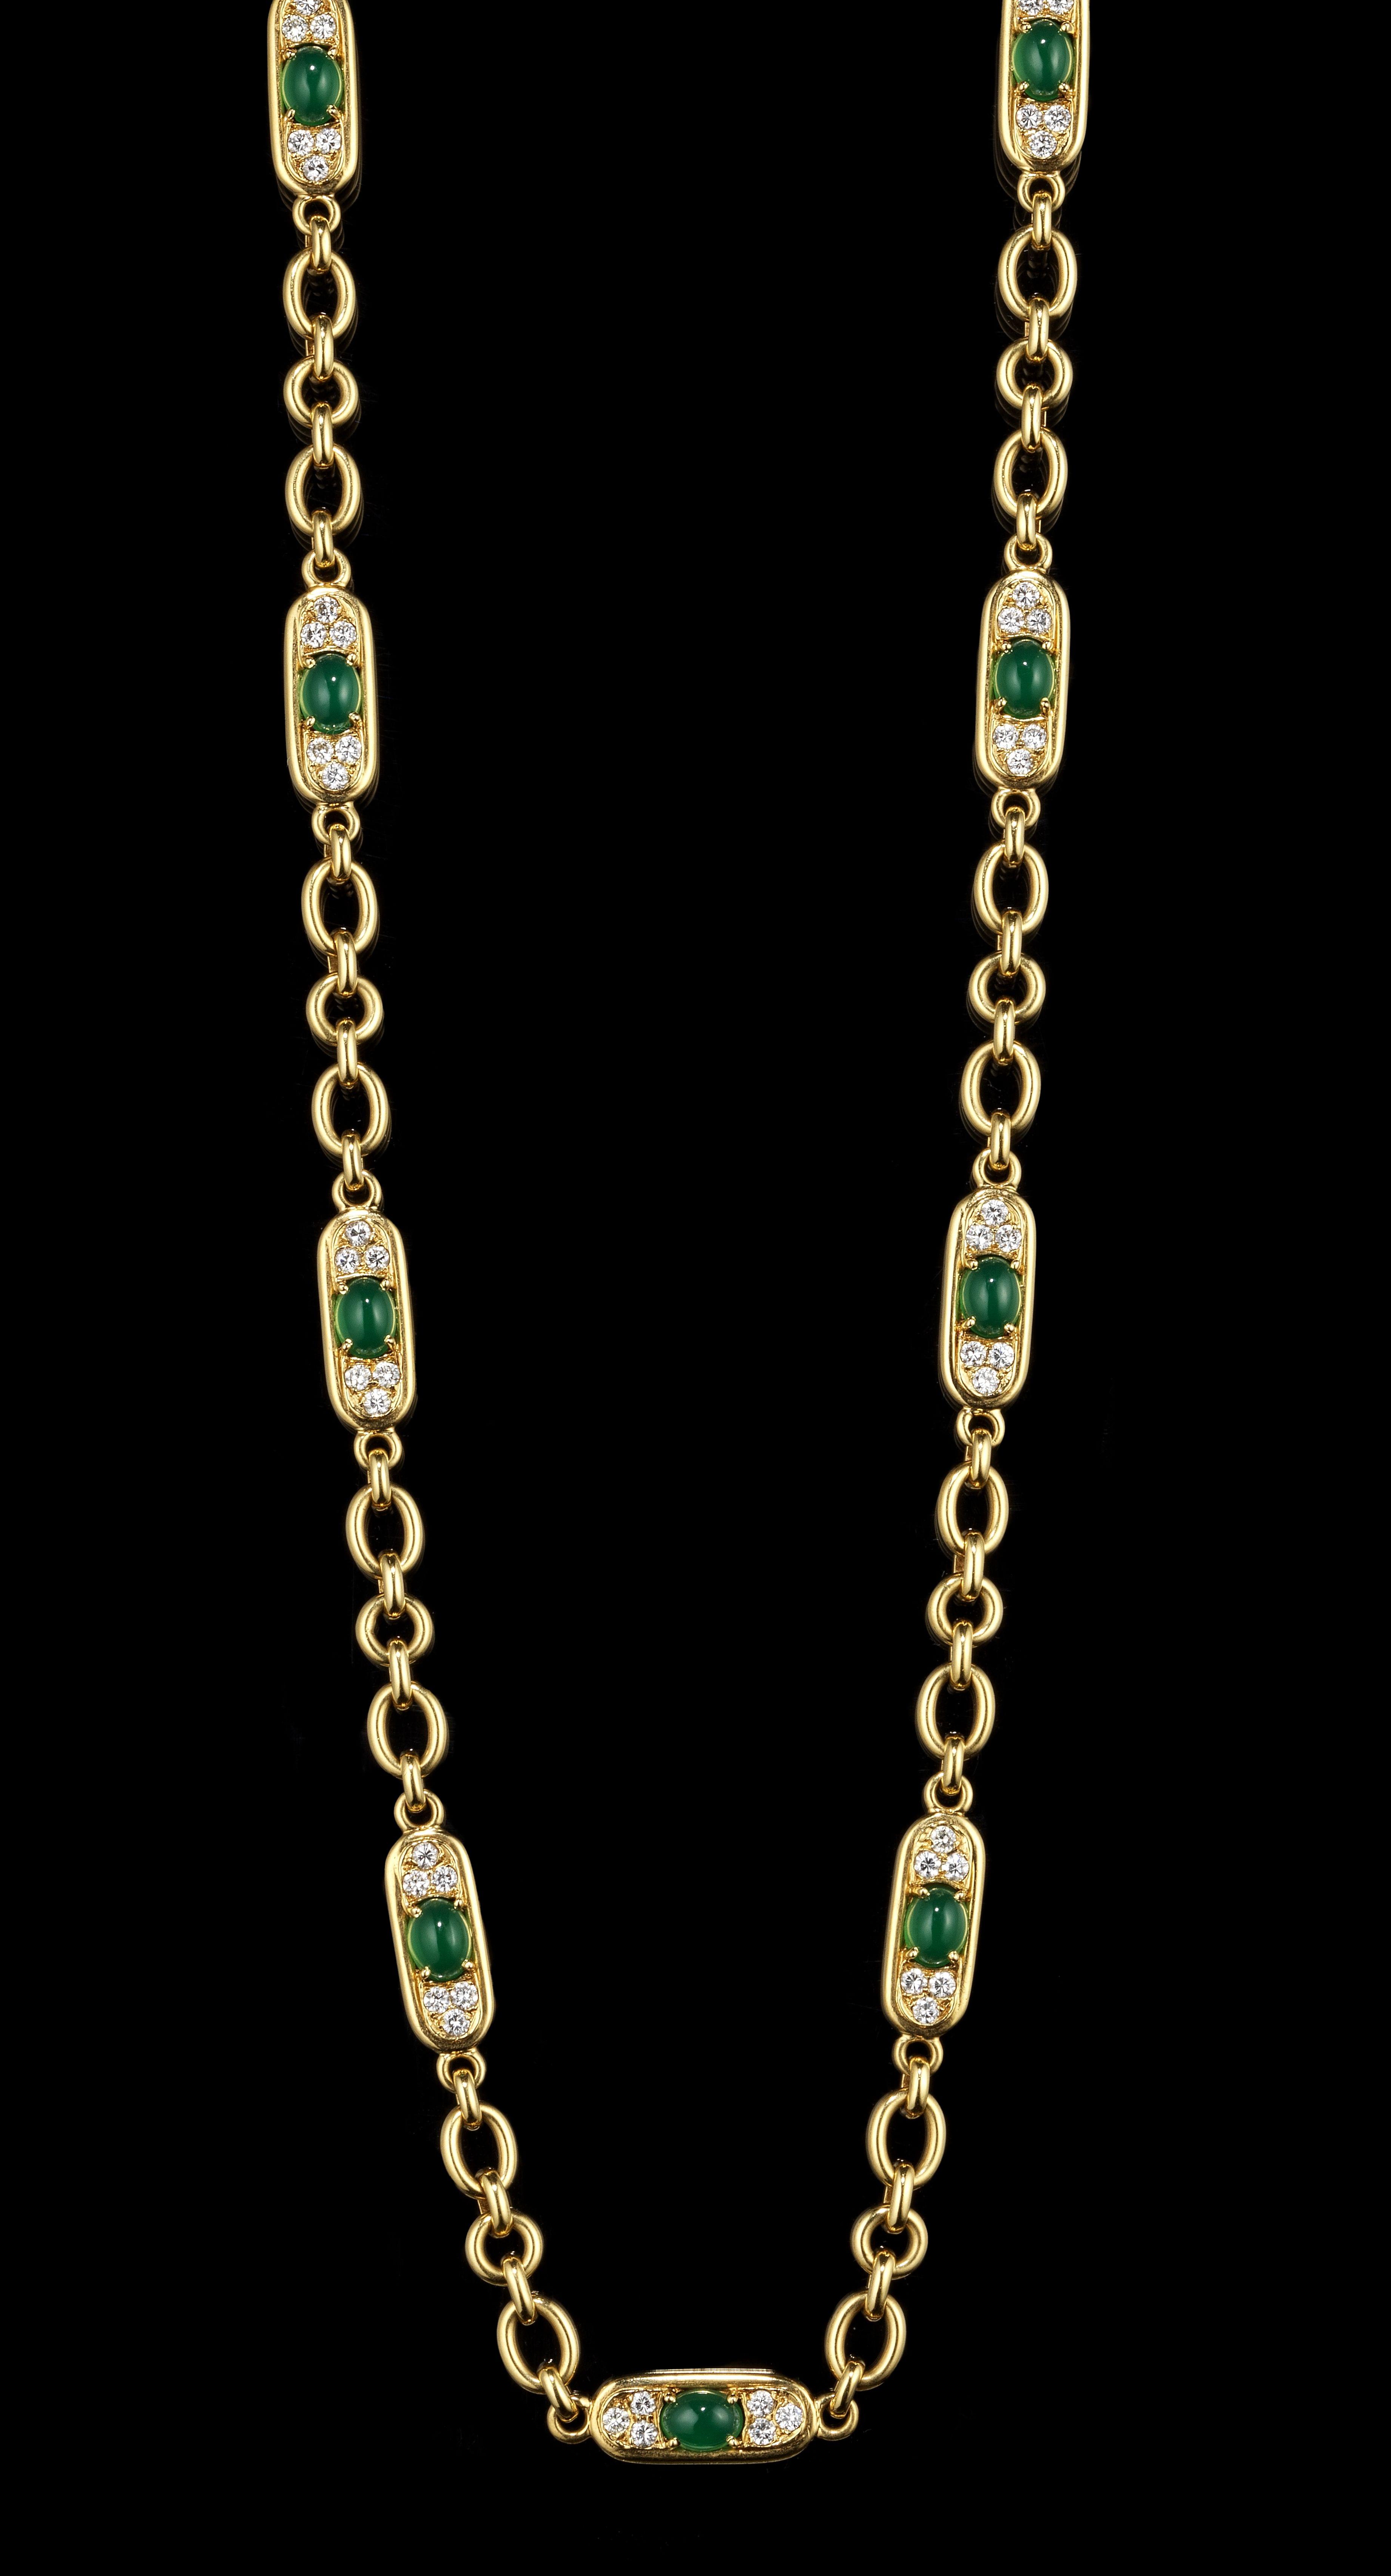 Van Cleef and Arpels, sautoir composé de motifs centrés d'agates vertes taille cabochon ovales épaulées de diamants (total env. 5 ct)